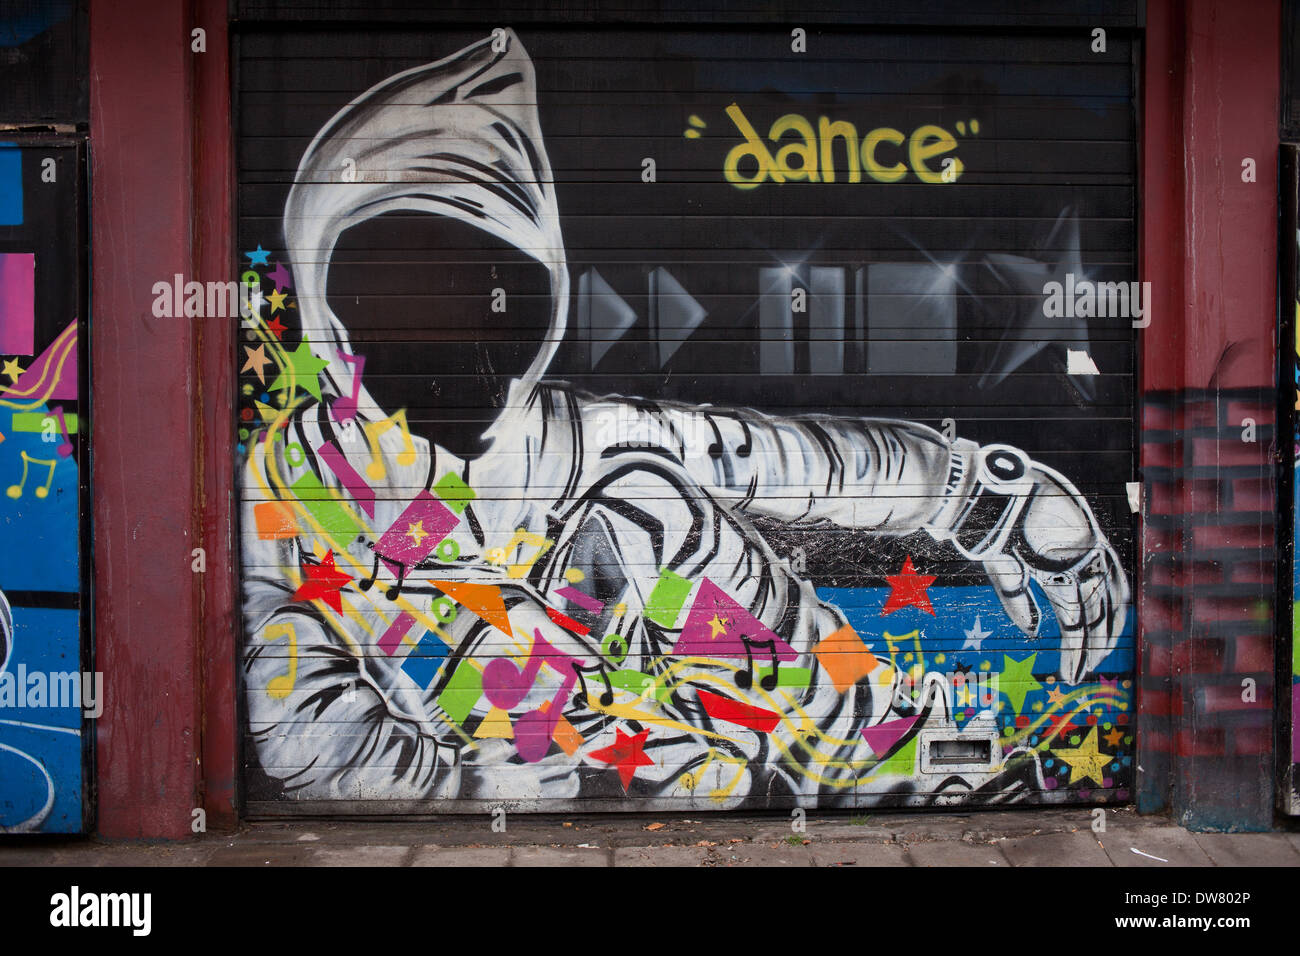 Geheimnisvolle vermummte Person mit Tanz und Musik Thema Graffiti, street-Art auf Garagentore in Rotterdam, Holland, Niederlande. Stockfoto